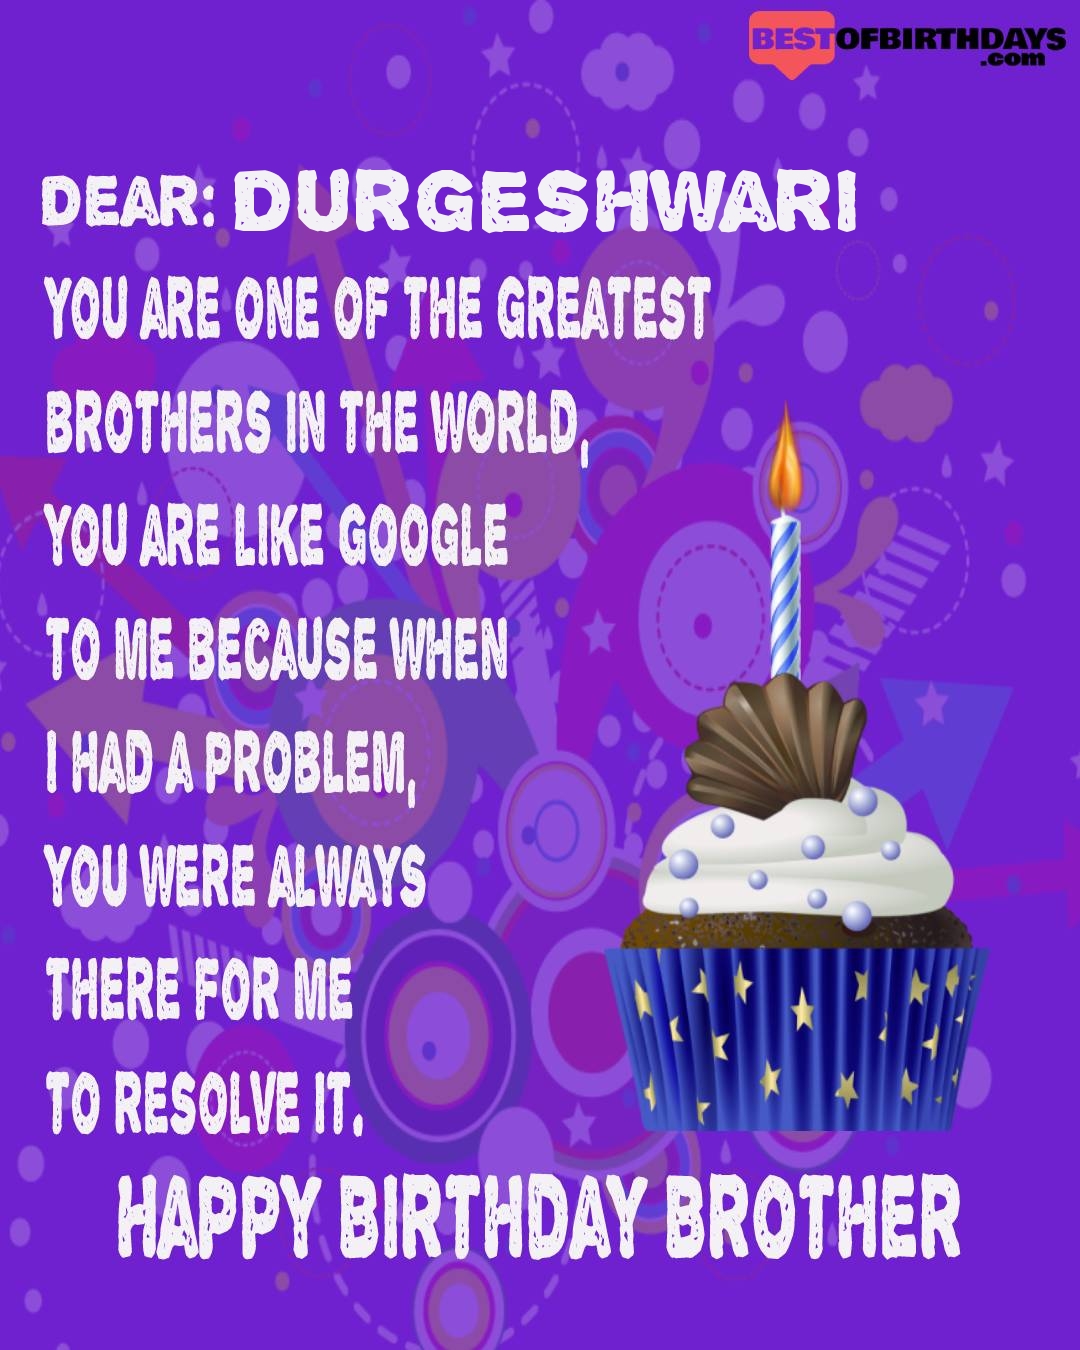 Happy birthday durgeshwari bhai brother bro